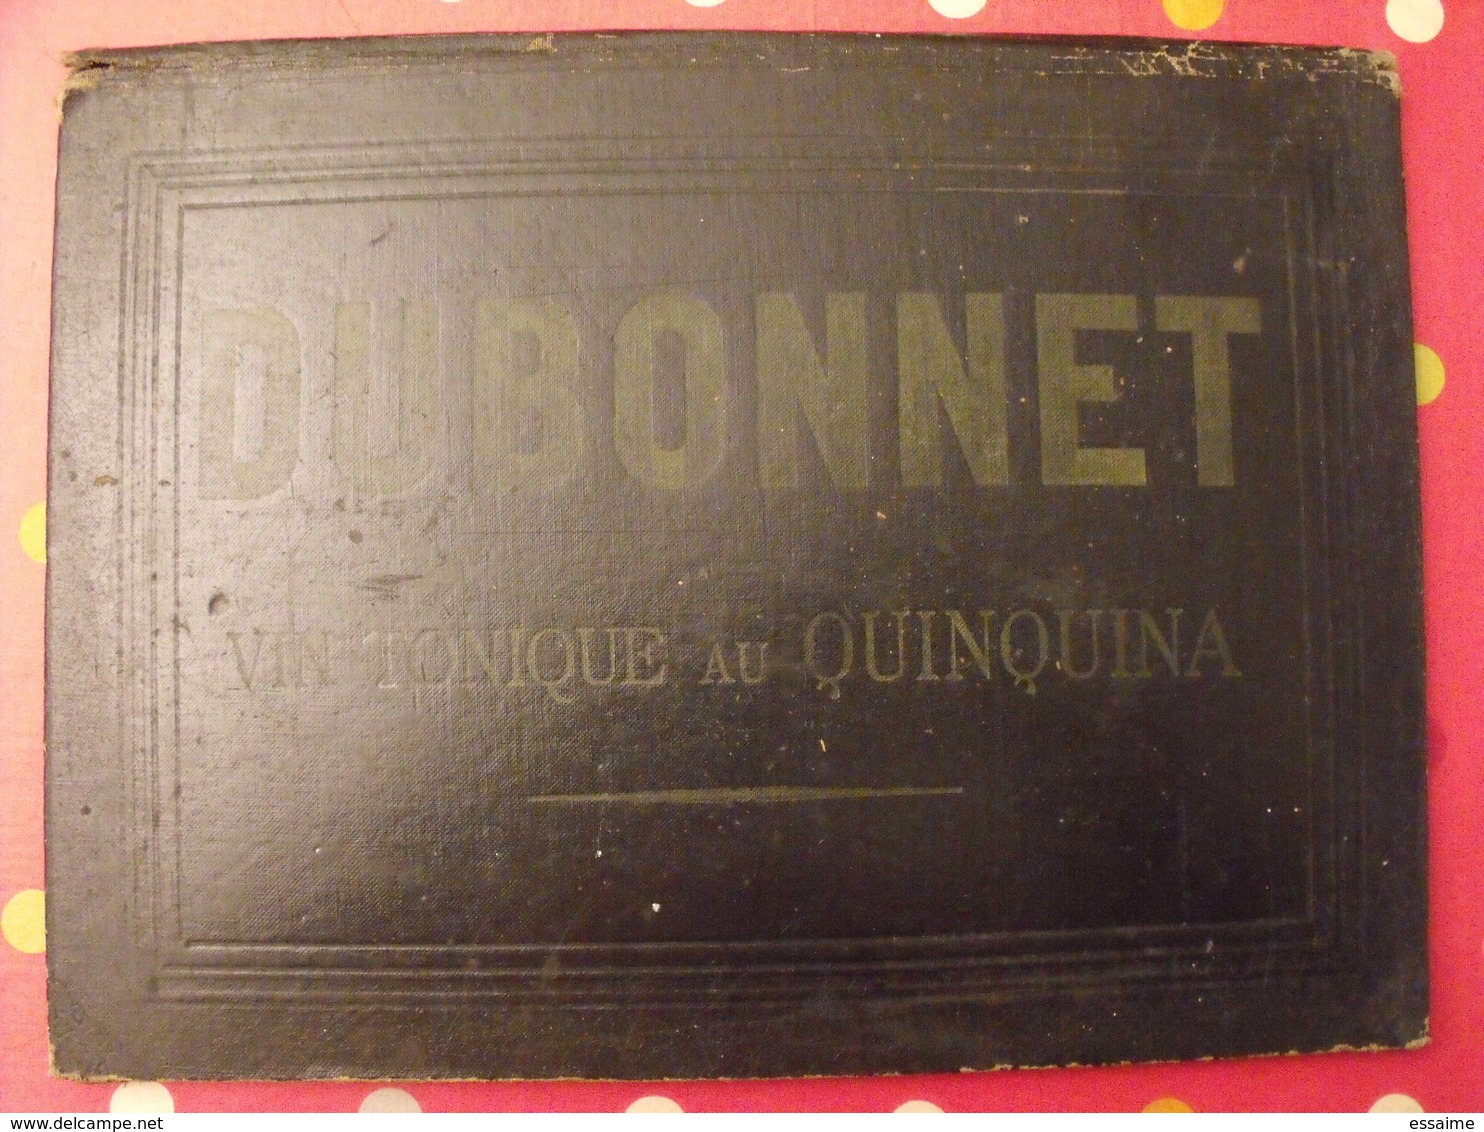 Sous-main Dubonnet, Vin Tonique Au Quiquina. Apéritif. Champagne Morlant Reims. Illustrateur : J Stall. Vers 1930 - Pappschilder